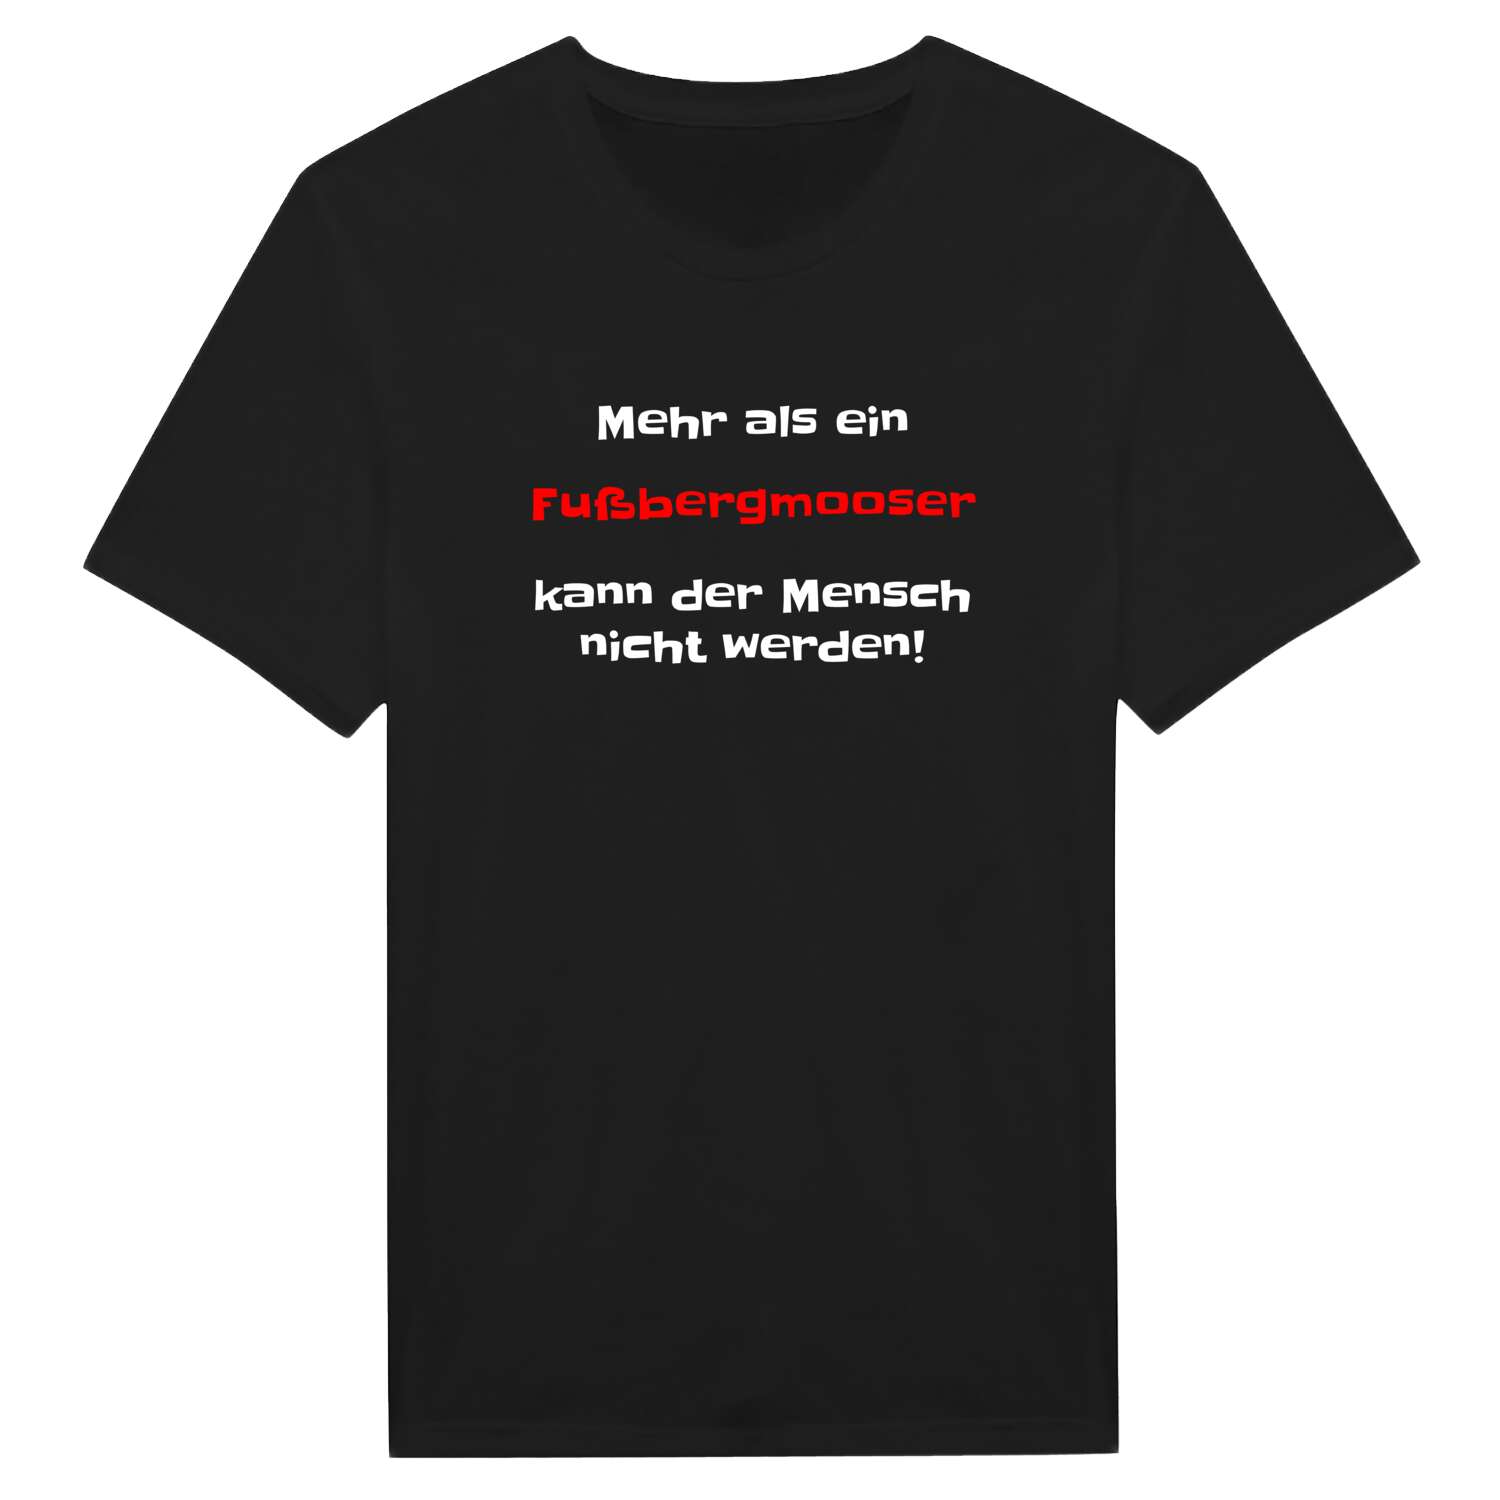 Fußbergmoos T-Shirt »Mehr als ein«